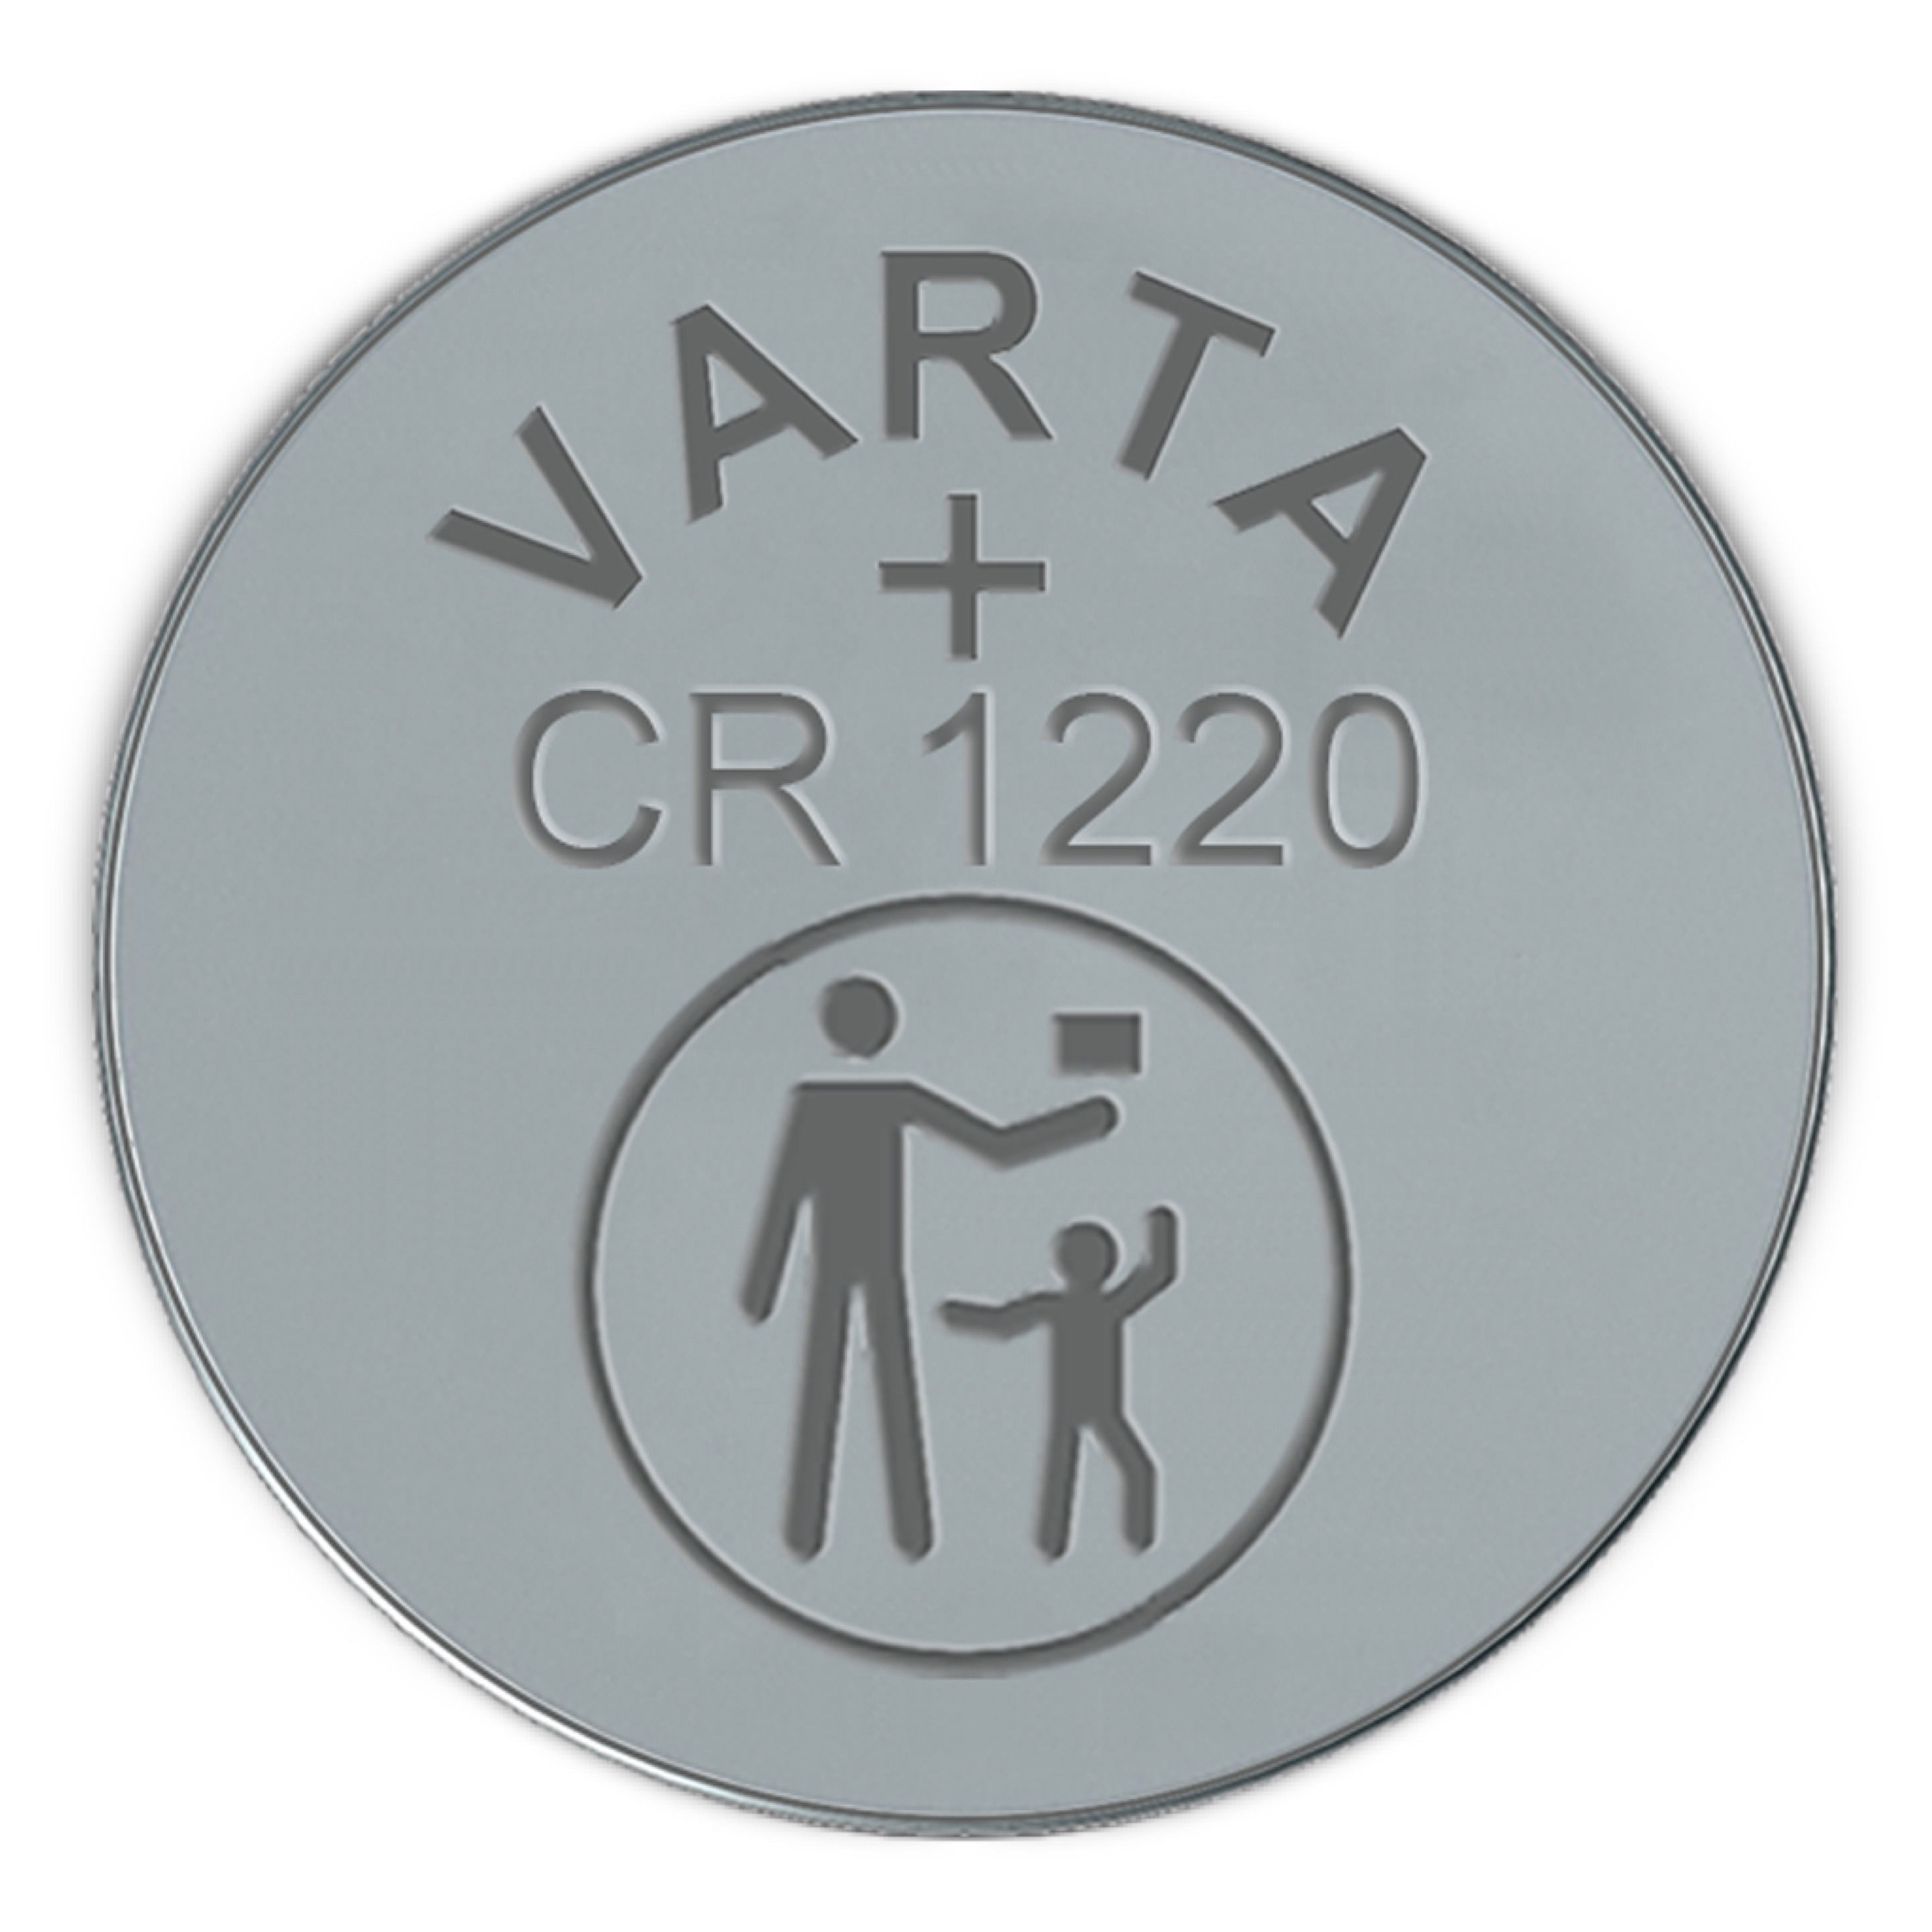 VARTA Knopfzelle CRx 3V Auswahl CR1220 CR2016 CR2032 CR2450 